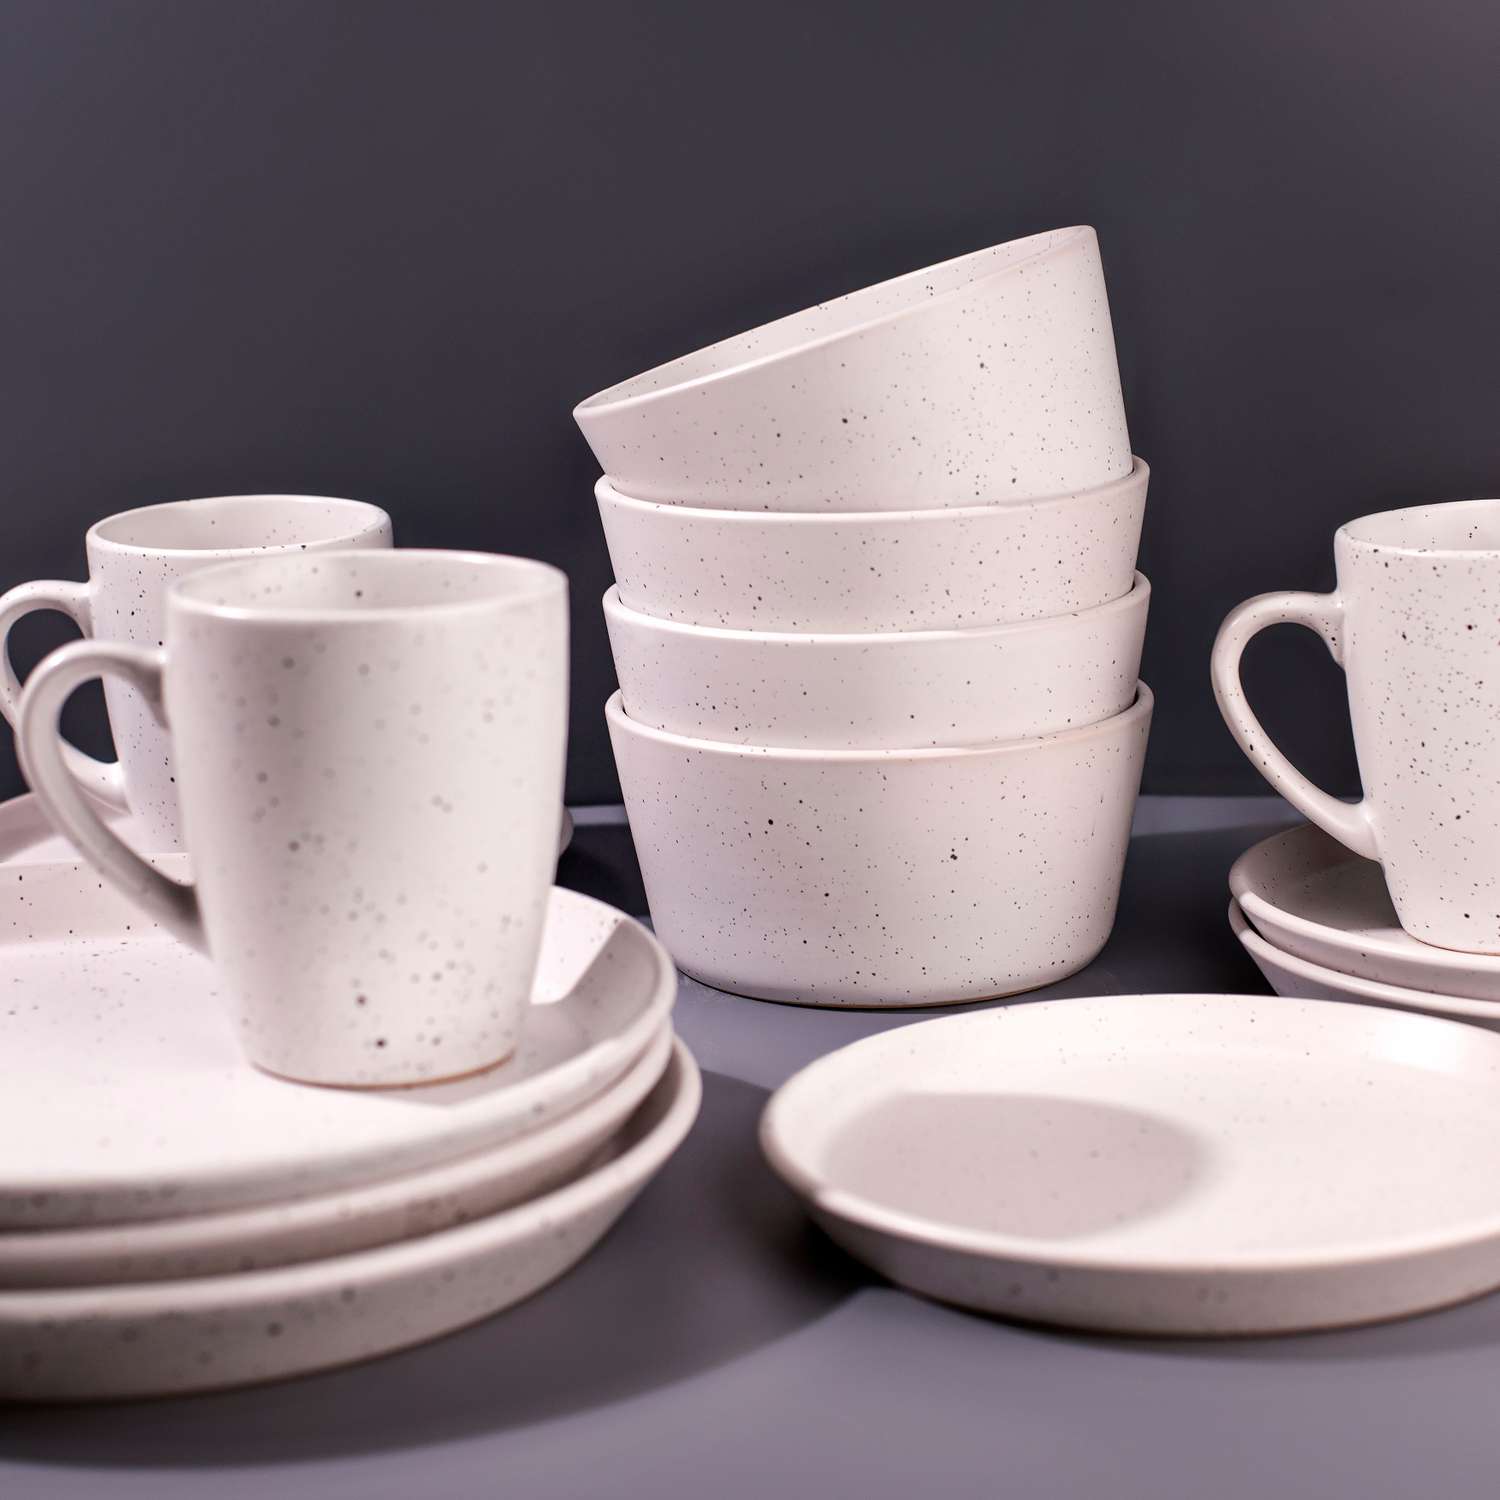 Набор столовой посуды Good Sale керамический 16 предметов - фото 6